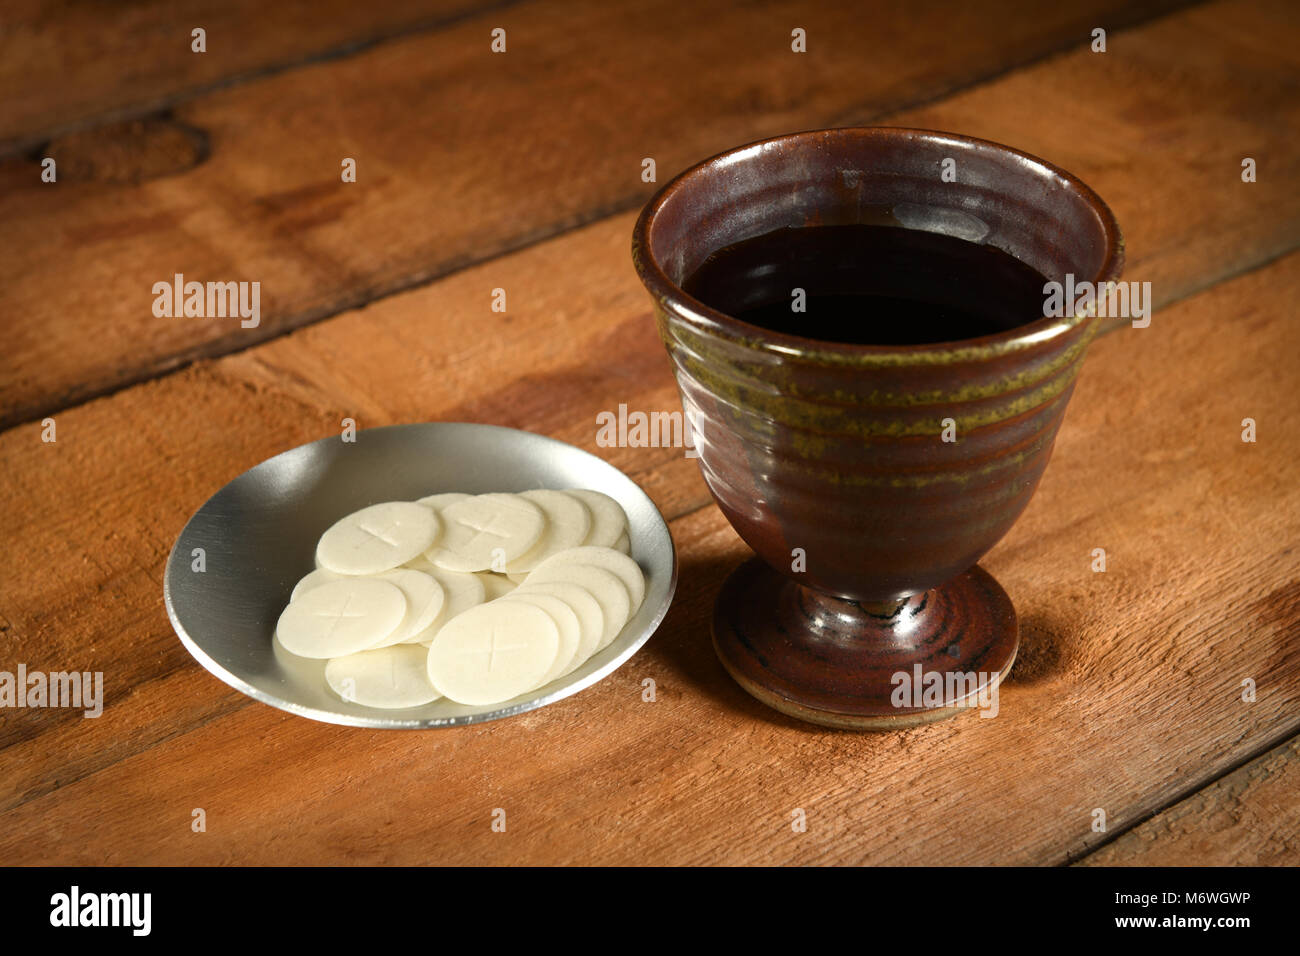 Comunión obleas y copa de vino en la mesa de madera Foto de stock